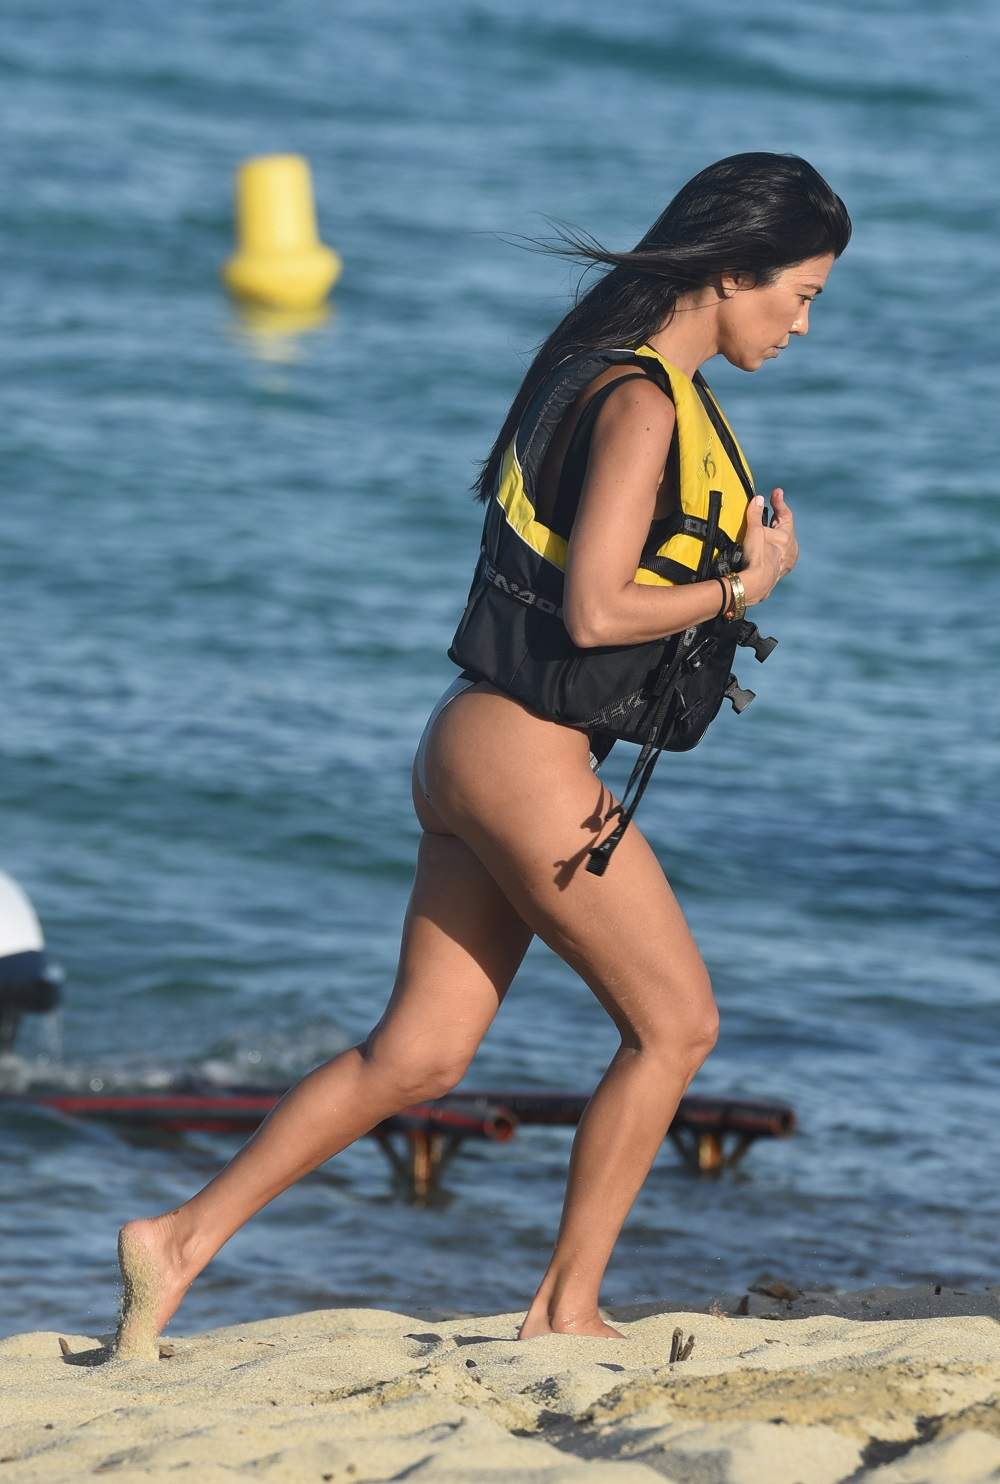 FOTO / Kourtney Kardashian, cu fesele şi sânii dezgoliţi pe skijet. Are 38 de ani şi 3 copii, dar se ţine bine